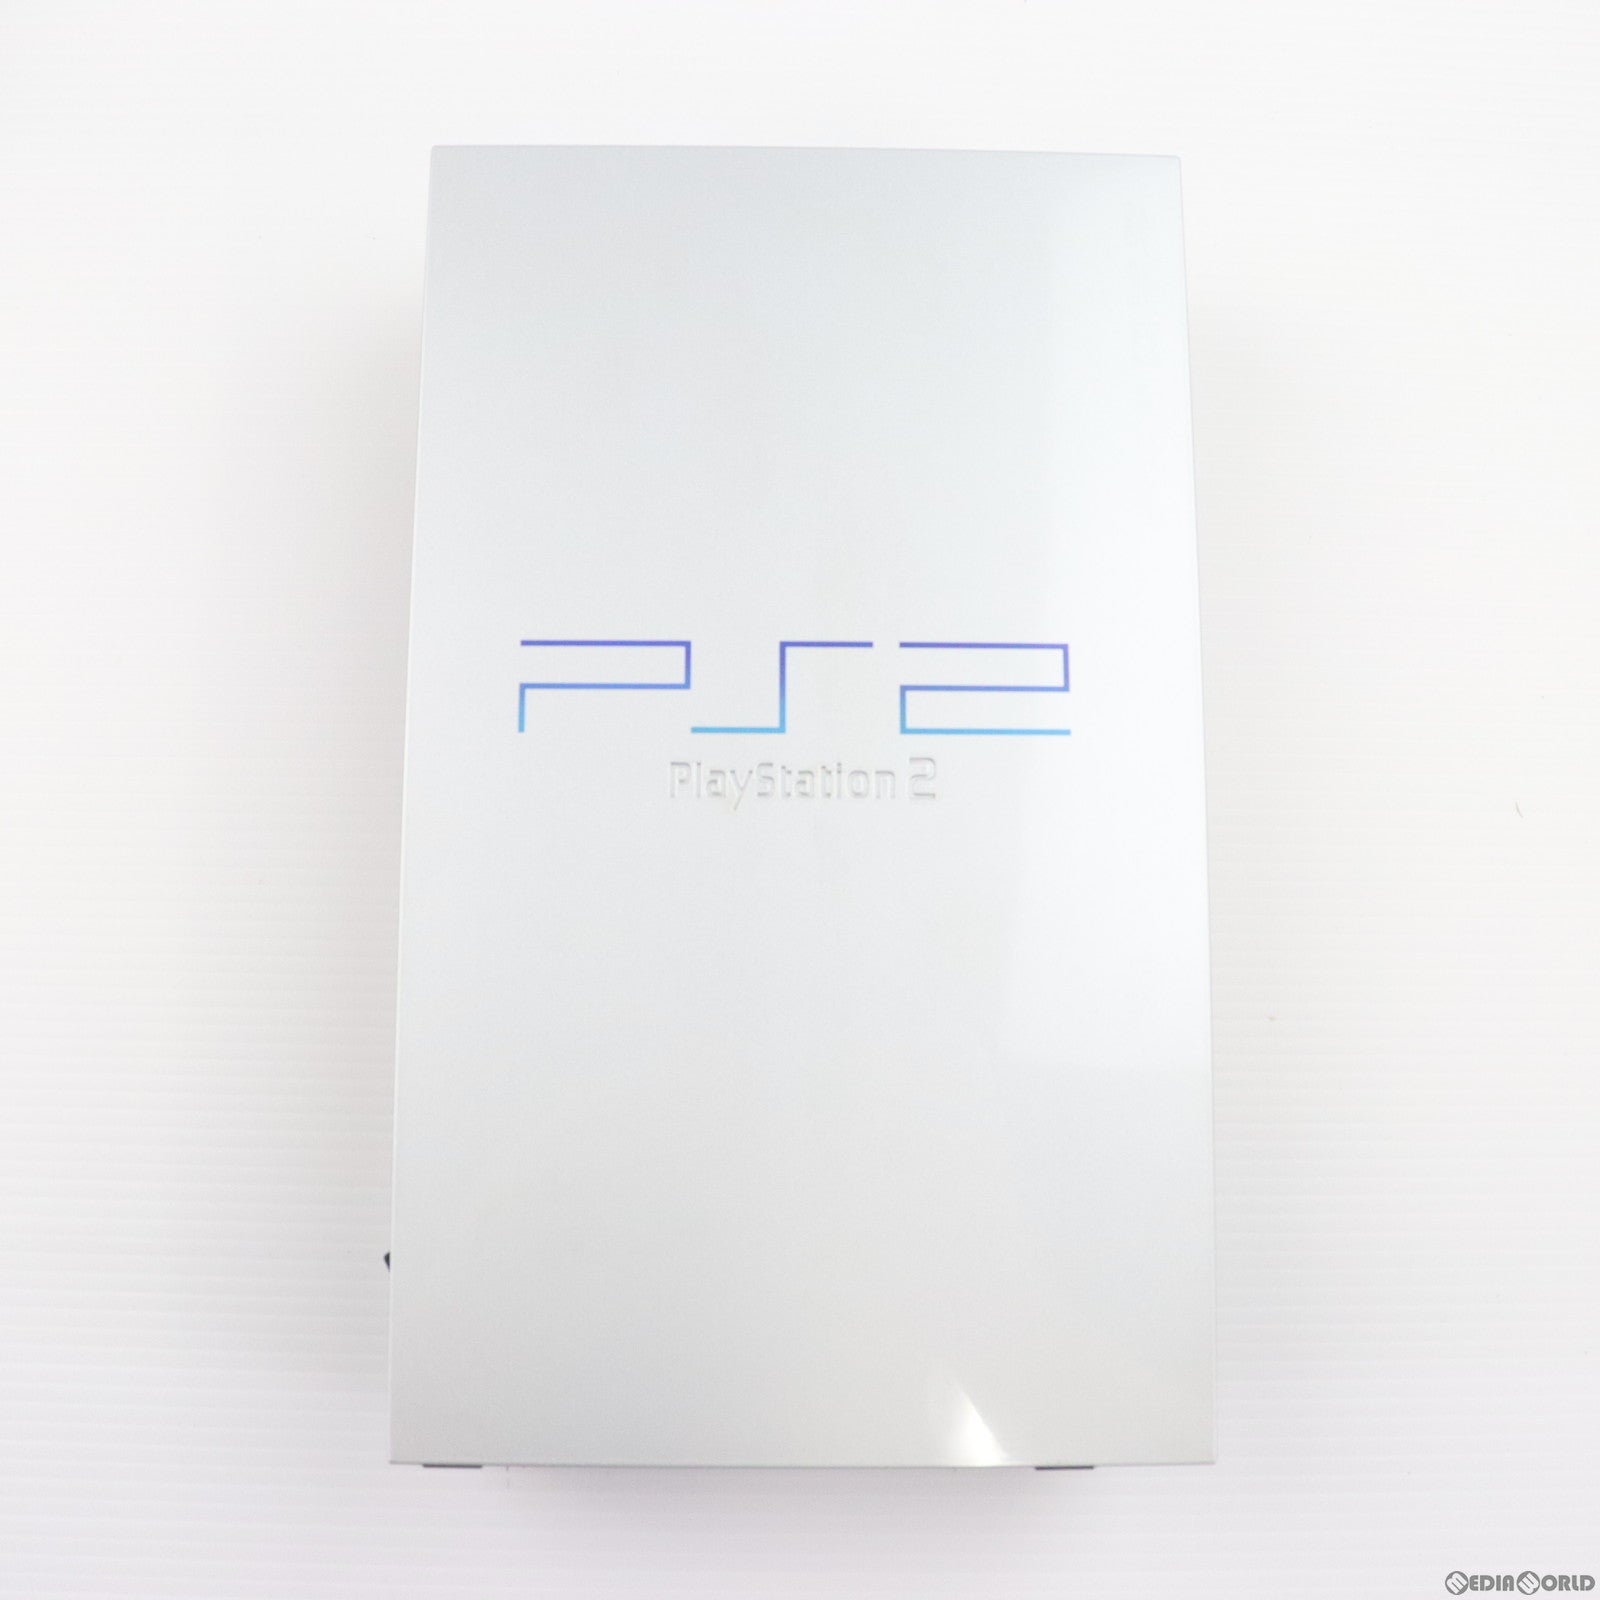 【中古即納】[本体][PS2]プレイステーション2 PlayStation2 SILVER(シルバー)(SCPH-39000S)(20030213)